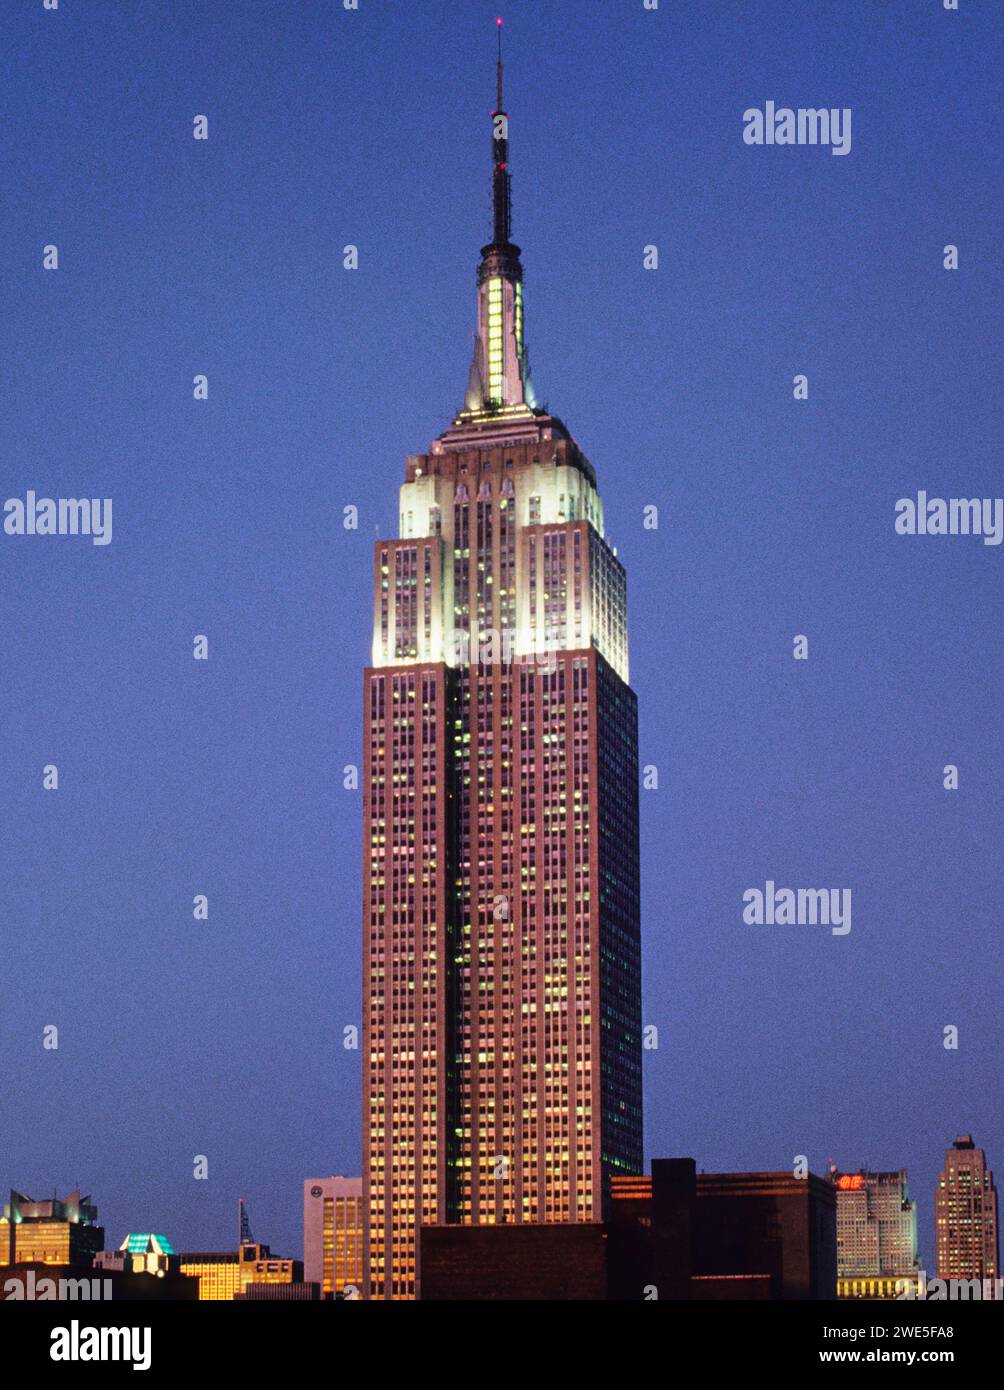 Nuit de l'Empire State Building à New York. Midtown Manhattan Art Deco immeuble de bureaux gratte-ciel USA vertical Banque D'Images